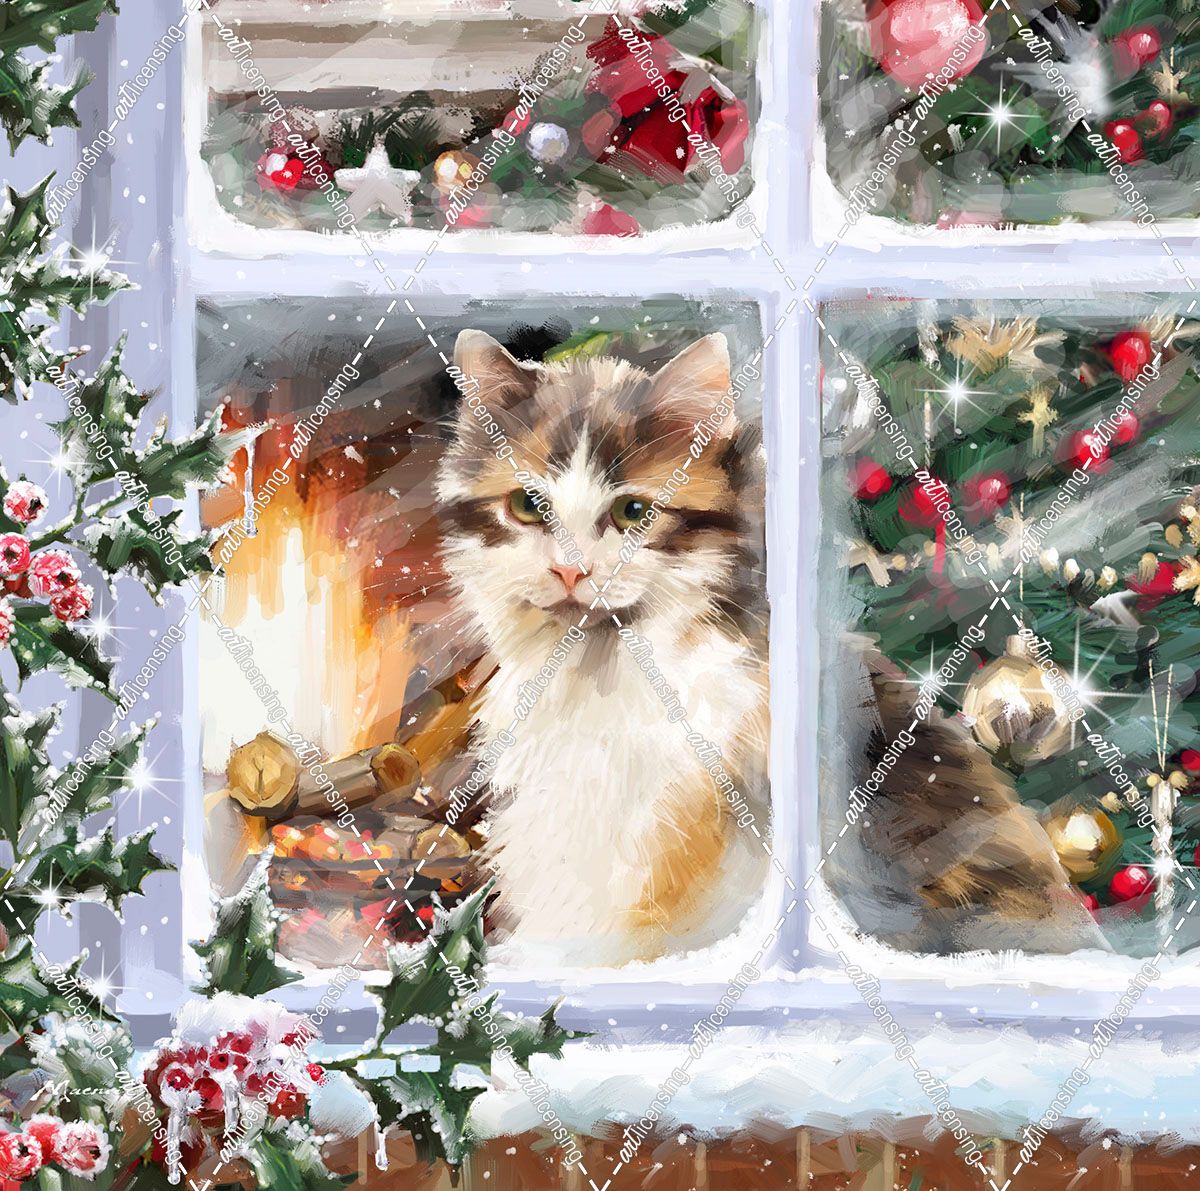 1563 Cat at Window